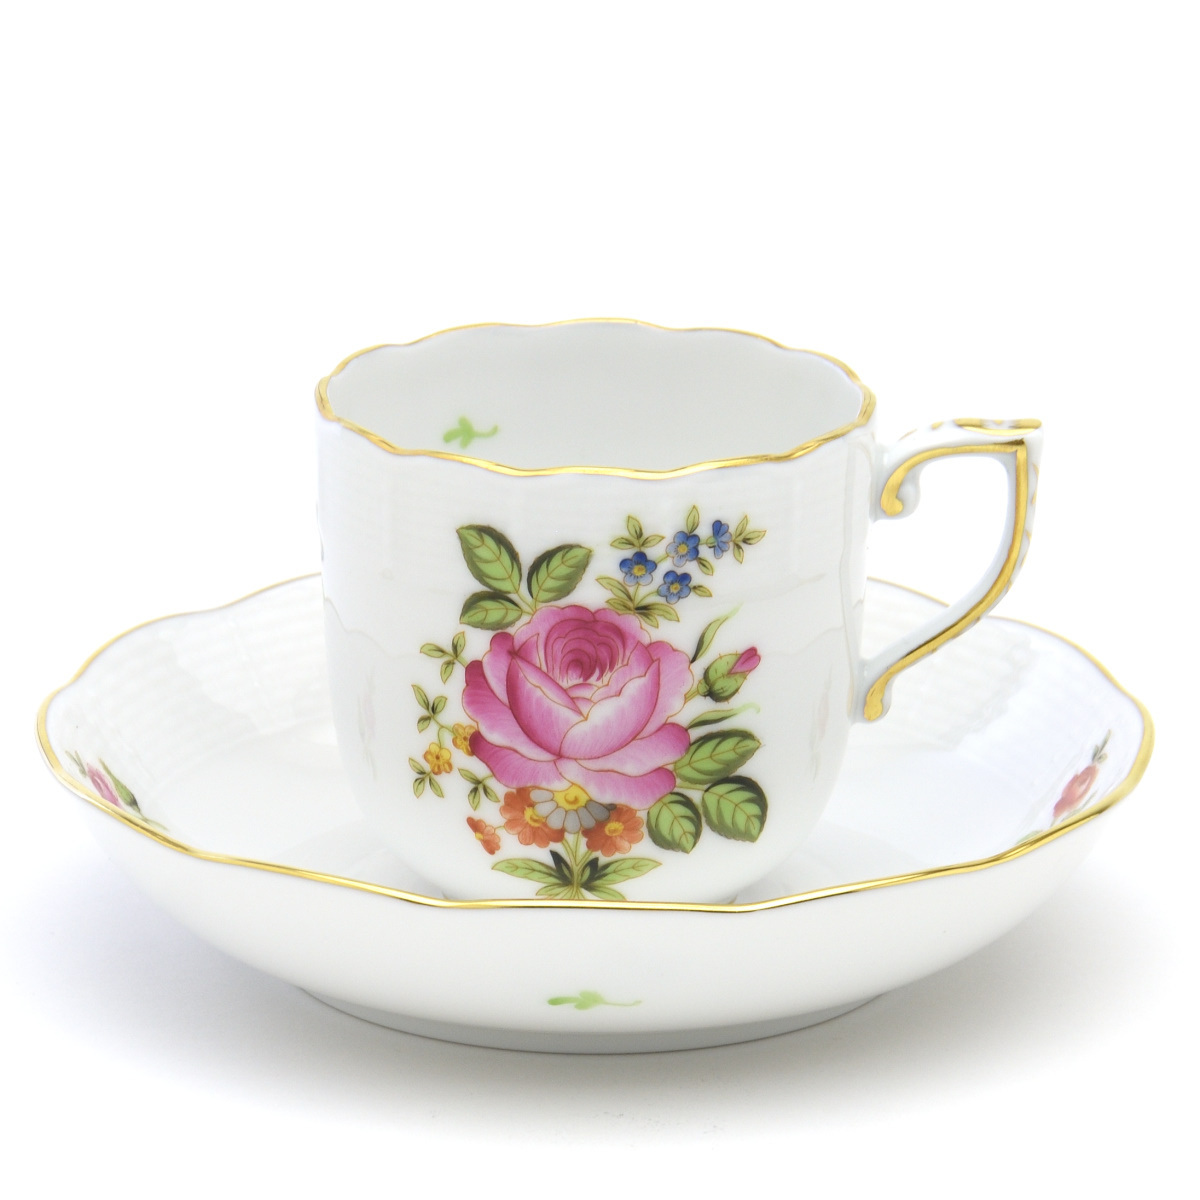 ヘレンド(Herend) コーヒーカップ 小さな薔薇の花束/ピンク 珈琲碗皿 手描き 磁器製 洋食器 モカカップ ハンガリー製 新品